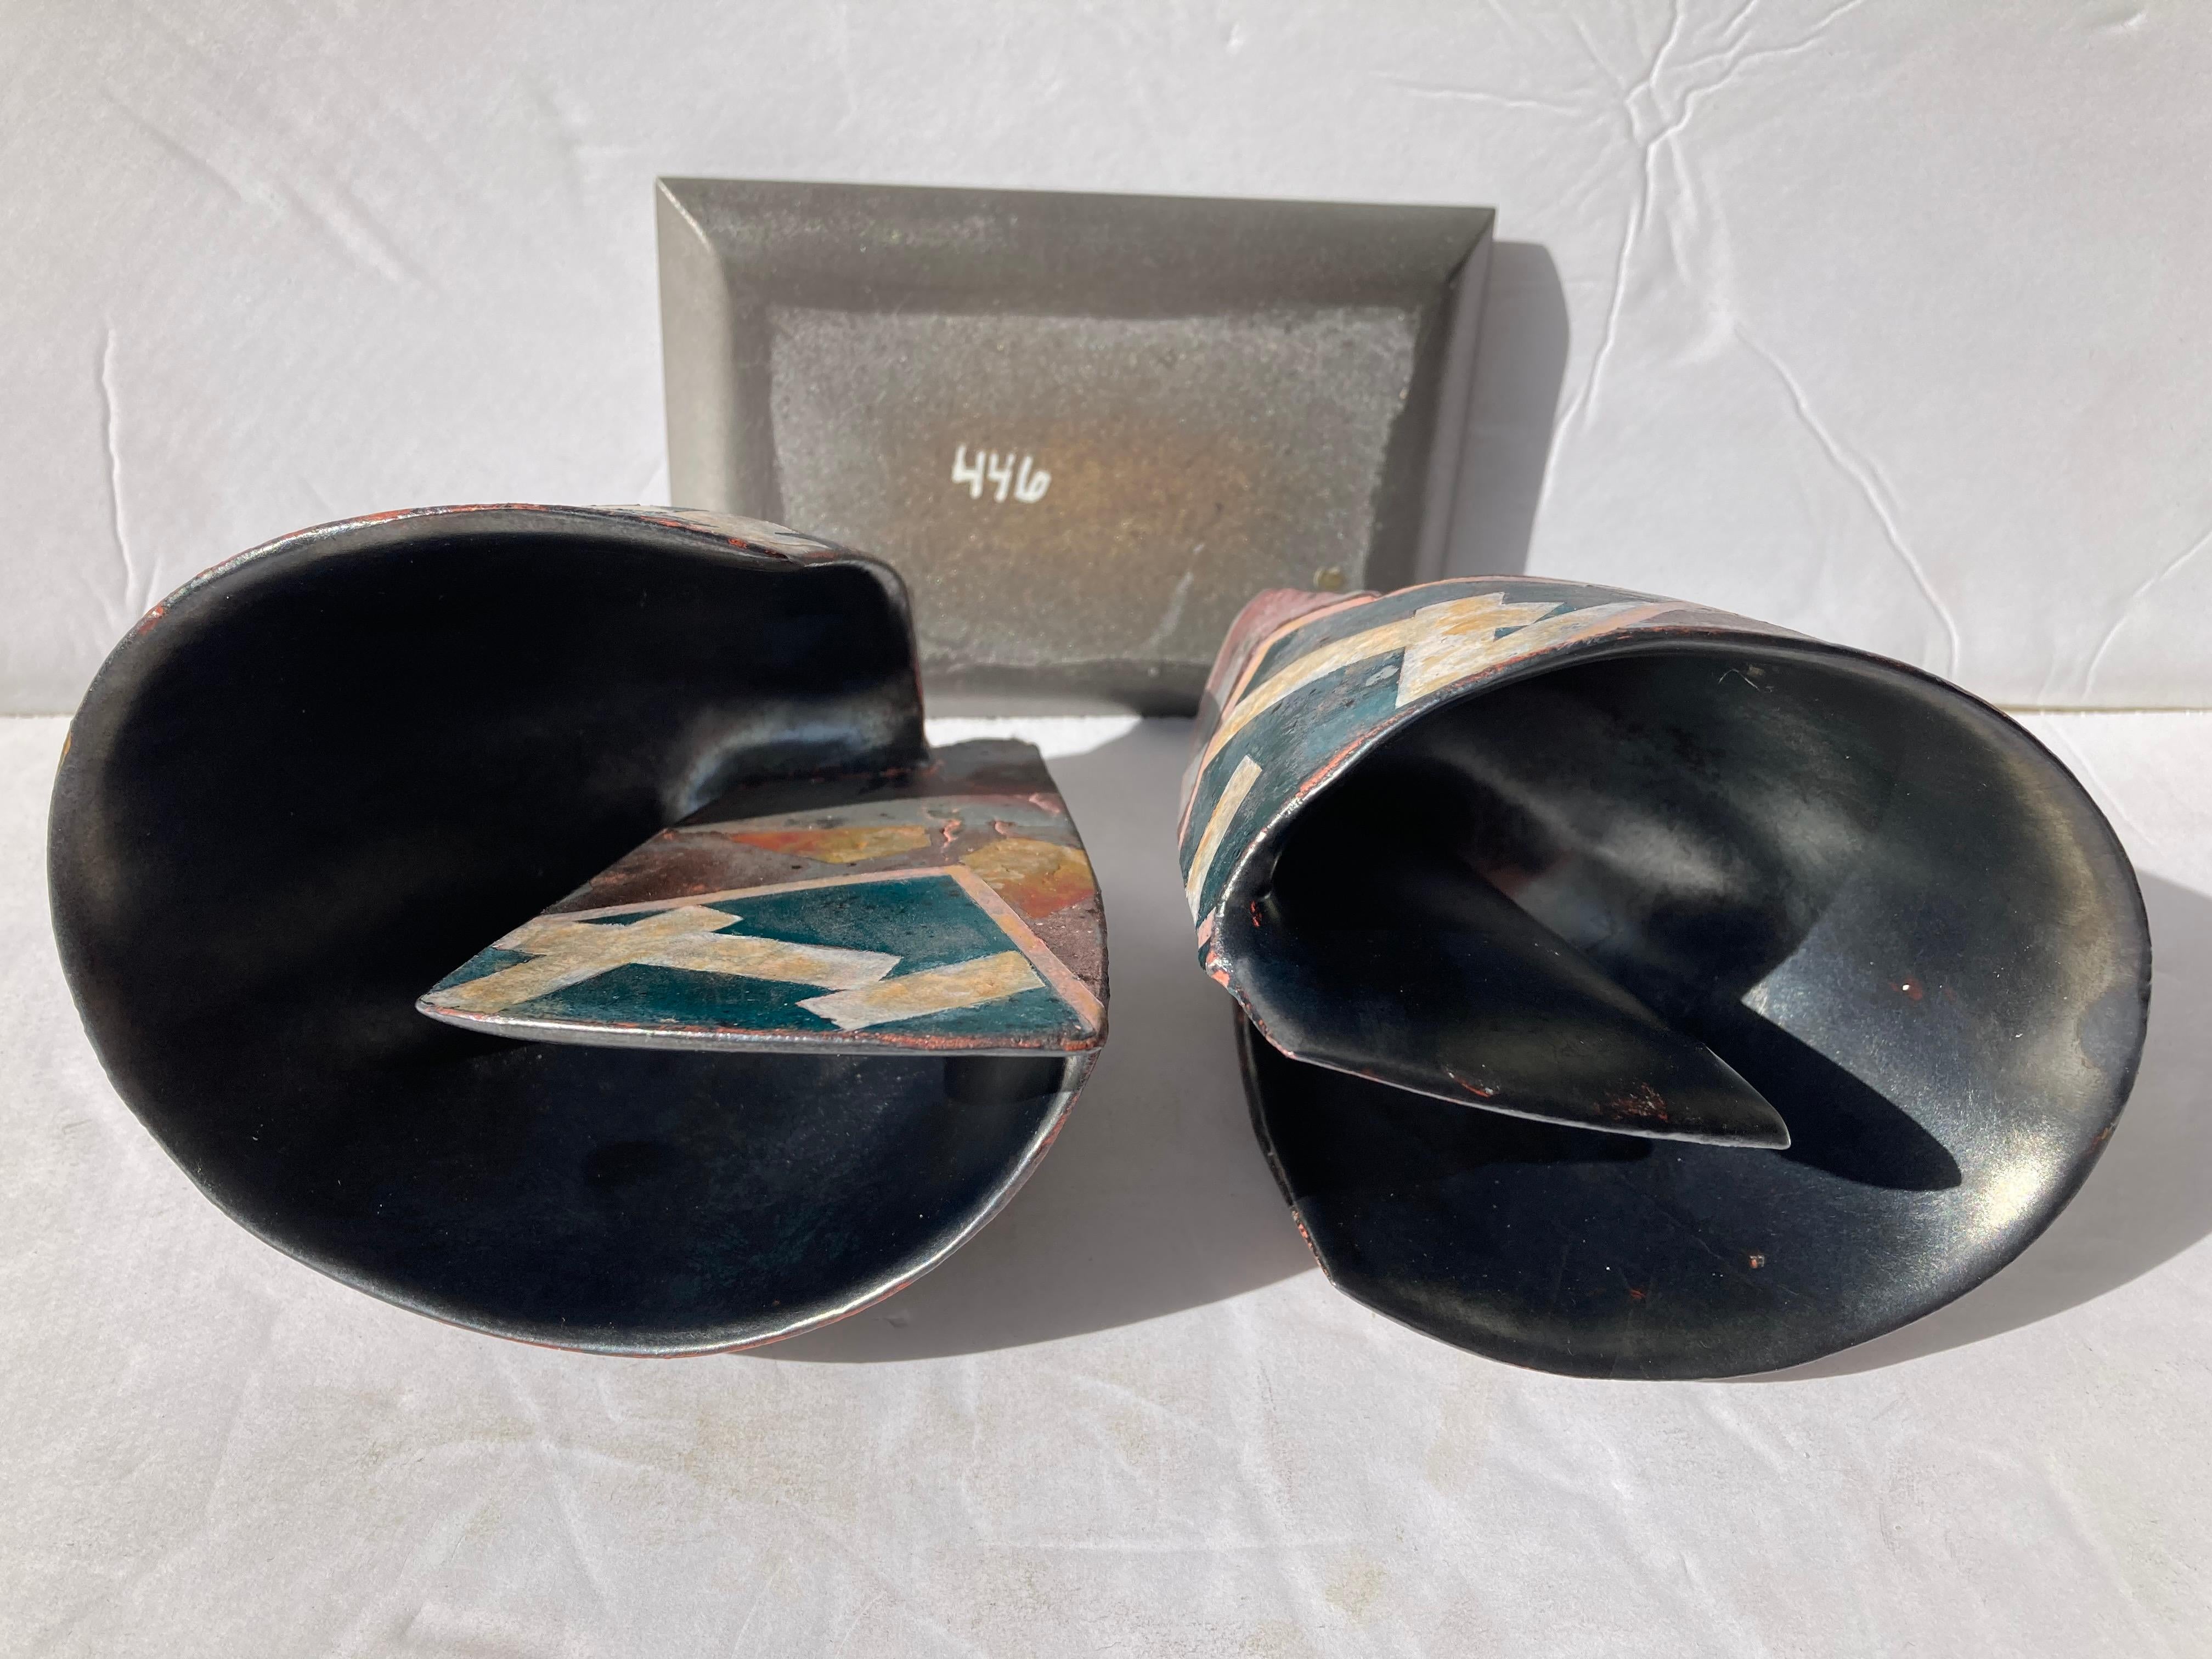 American Bennett Bean Pair Bowls / Vases, Ceramic/Pottery on Base Master # 446, Marked